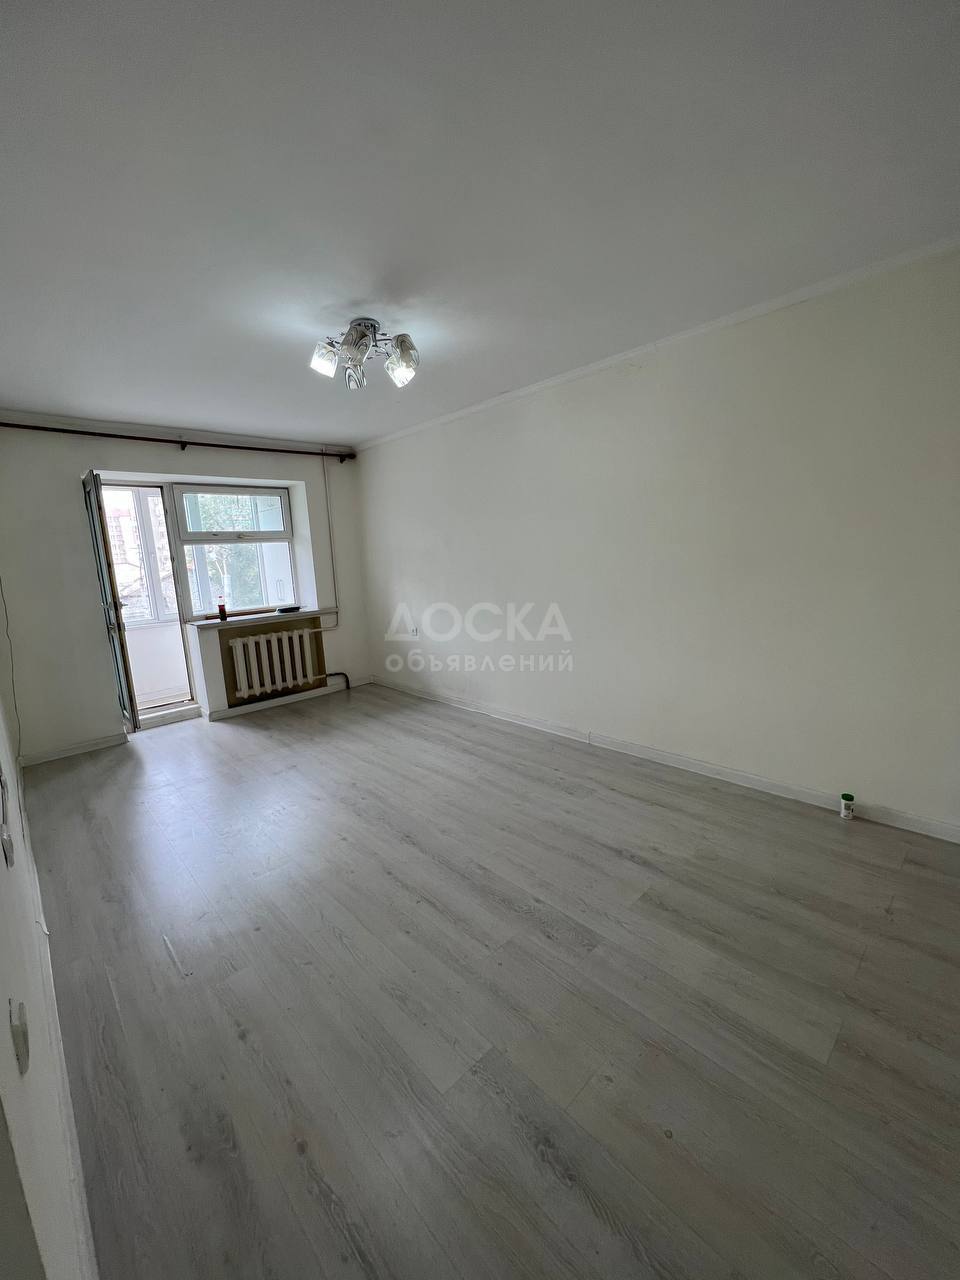 Продаю 1-комнатную квартиру, 32кв. м., этаж - 3/4, Советская/Кулатова.